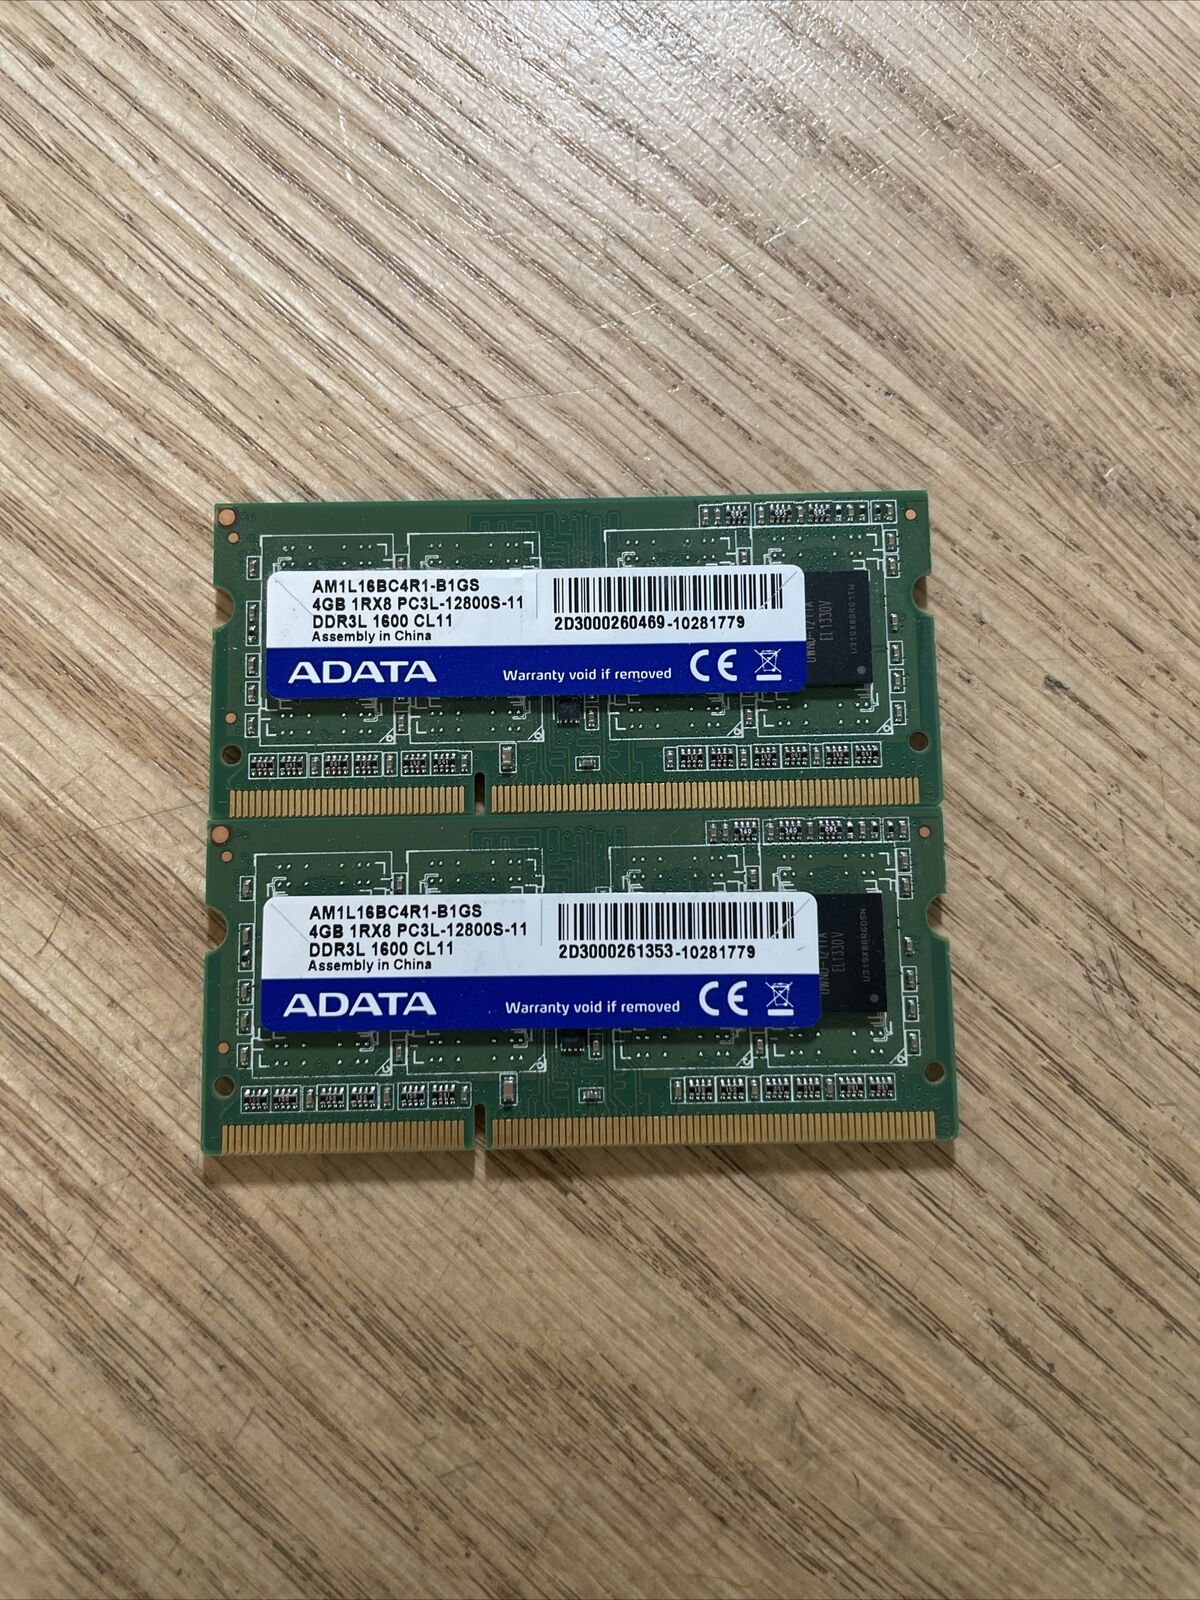 lot of 2 Laptop Ram ADATA 4GB x1 DDR3 1600mhz AM1L16BC4R1-B1GS SO-DIMM 1.35v